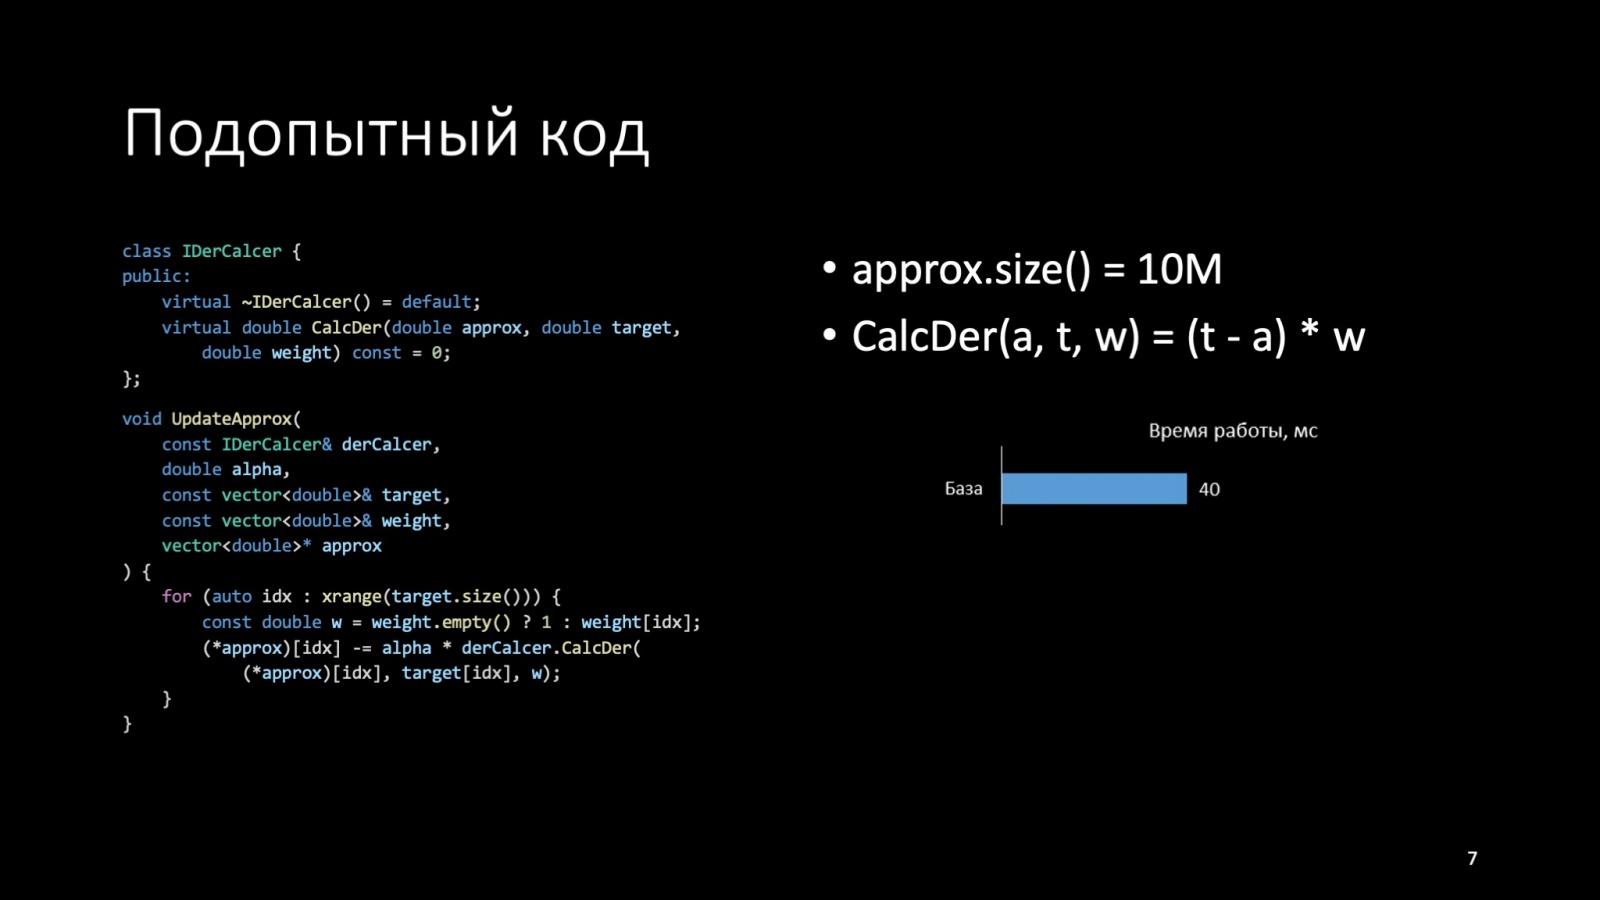 Оптимизация C++: совмещаем скорость и высокий уровень. Доклад Яндекса - 7